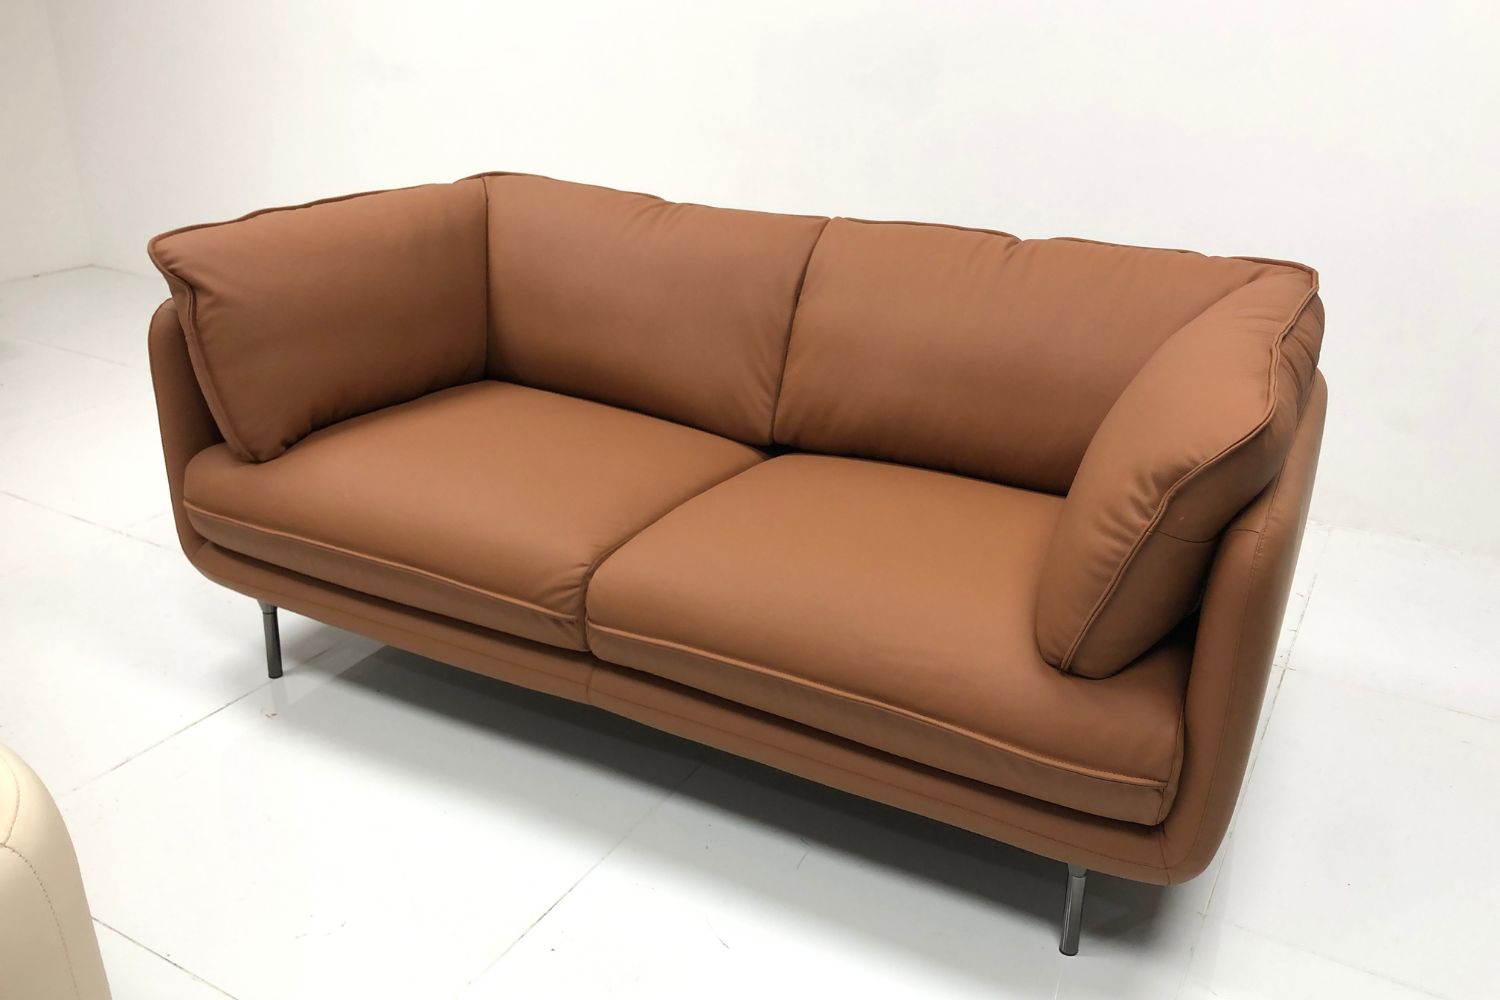 Cuddle 180cm Brown Half Leather Sofa Eileen | Mar 24